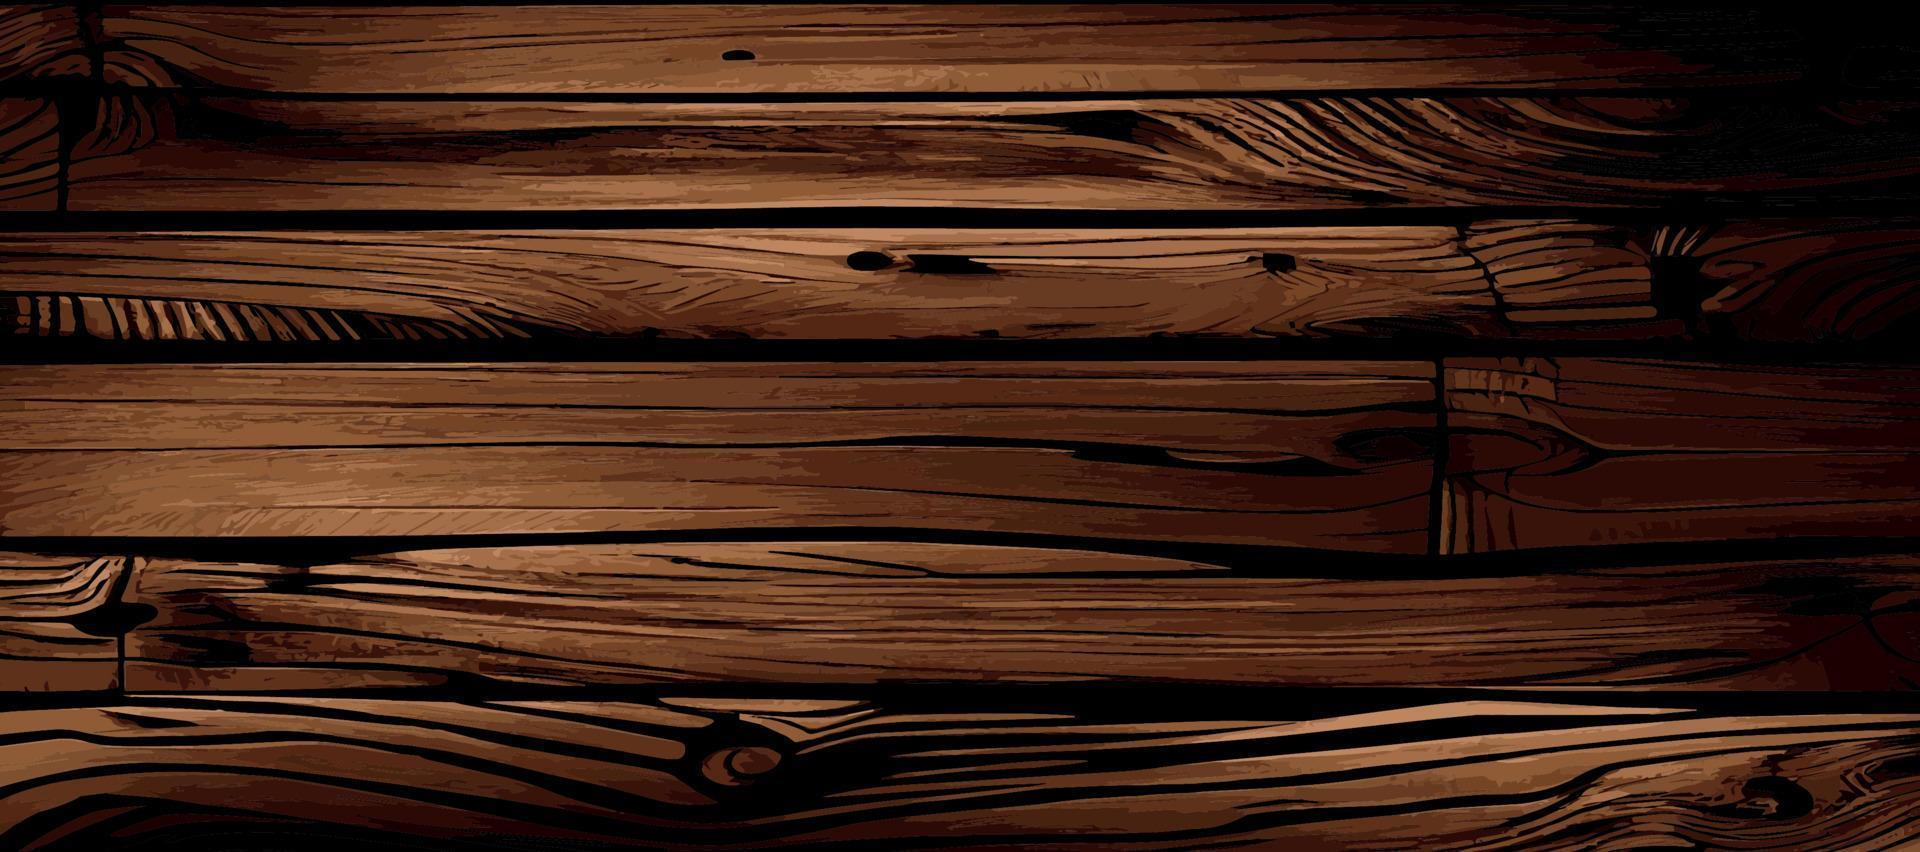 Với hình nền ván gỗ sợi tự nhiên, bạn có thể mang đến cho thiết kế của mình một cảm giác tự nhiên và ấn tượng. Hãy xem hình ảnh này để khám phá những đường vân gỗ tuyệt đẹp và chân thật.